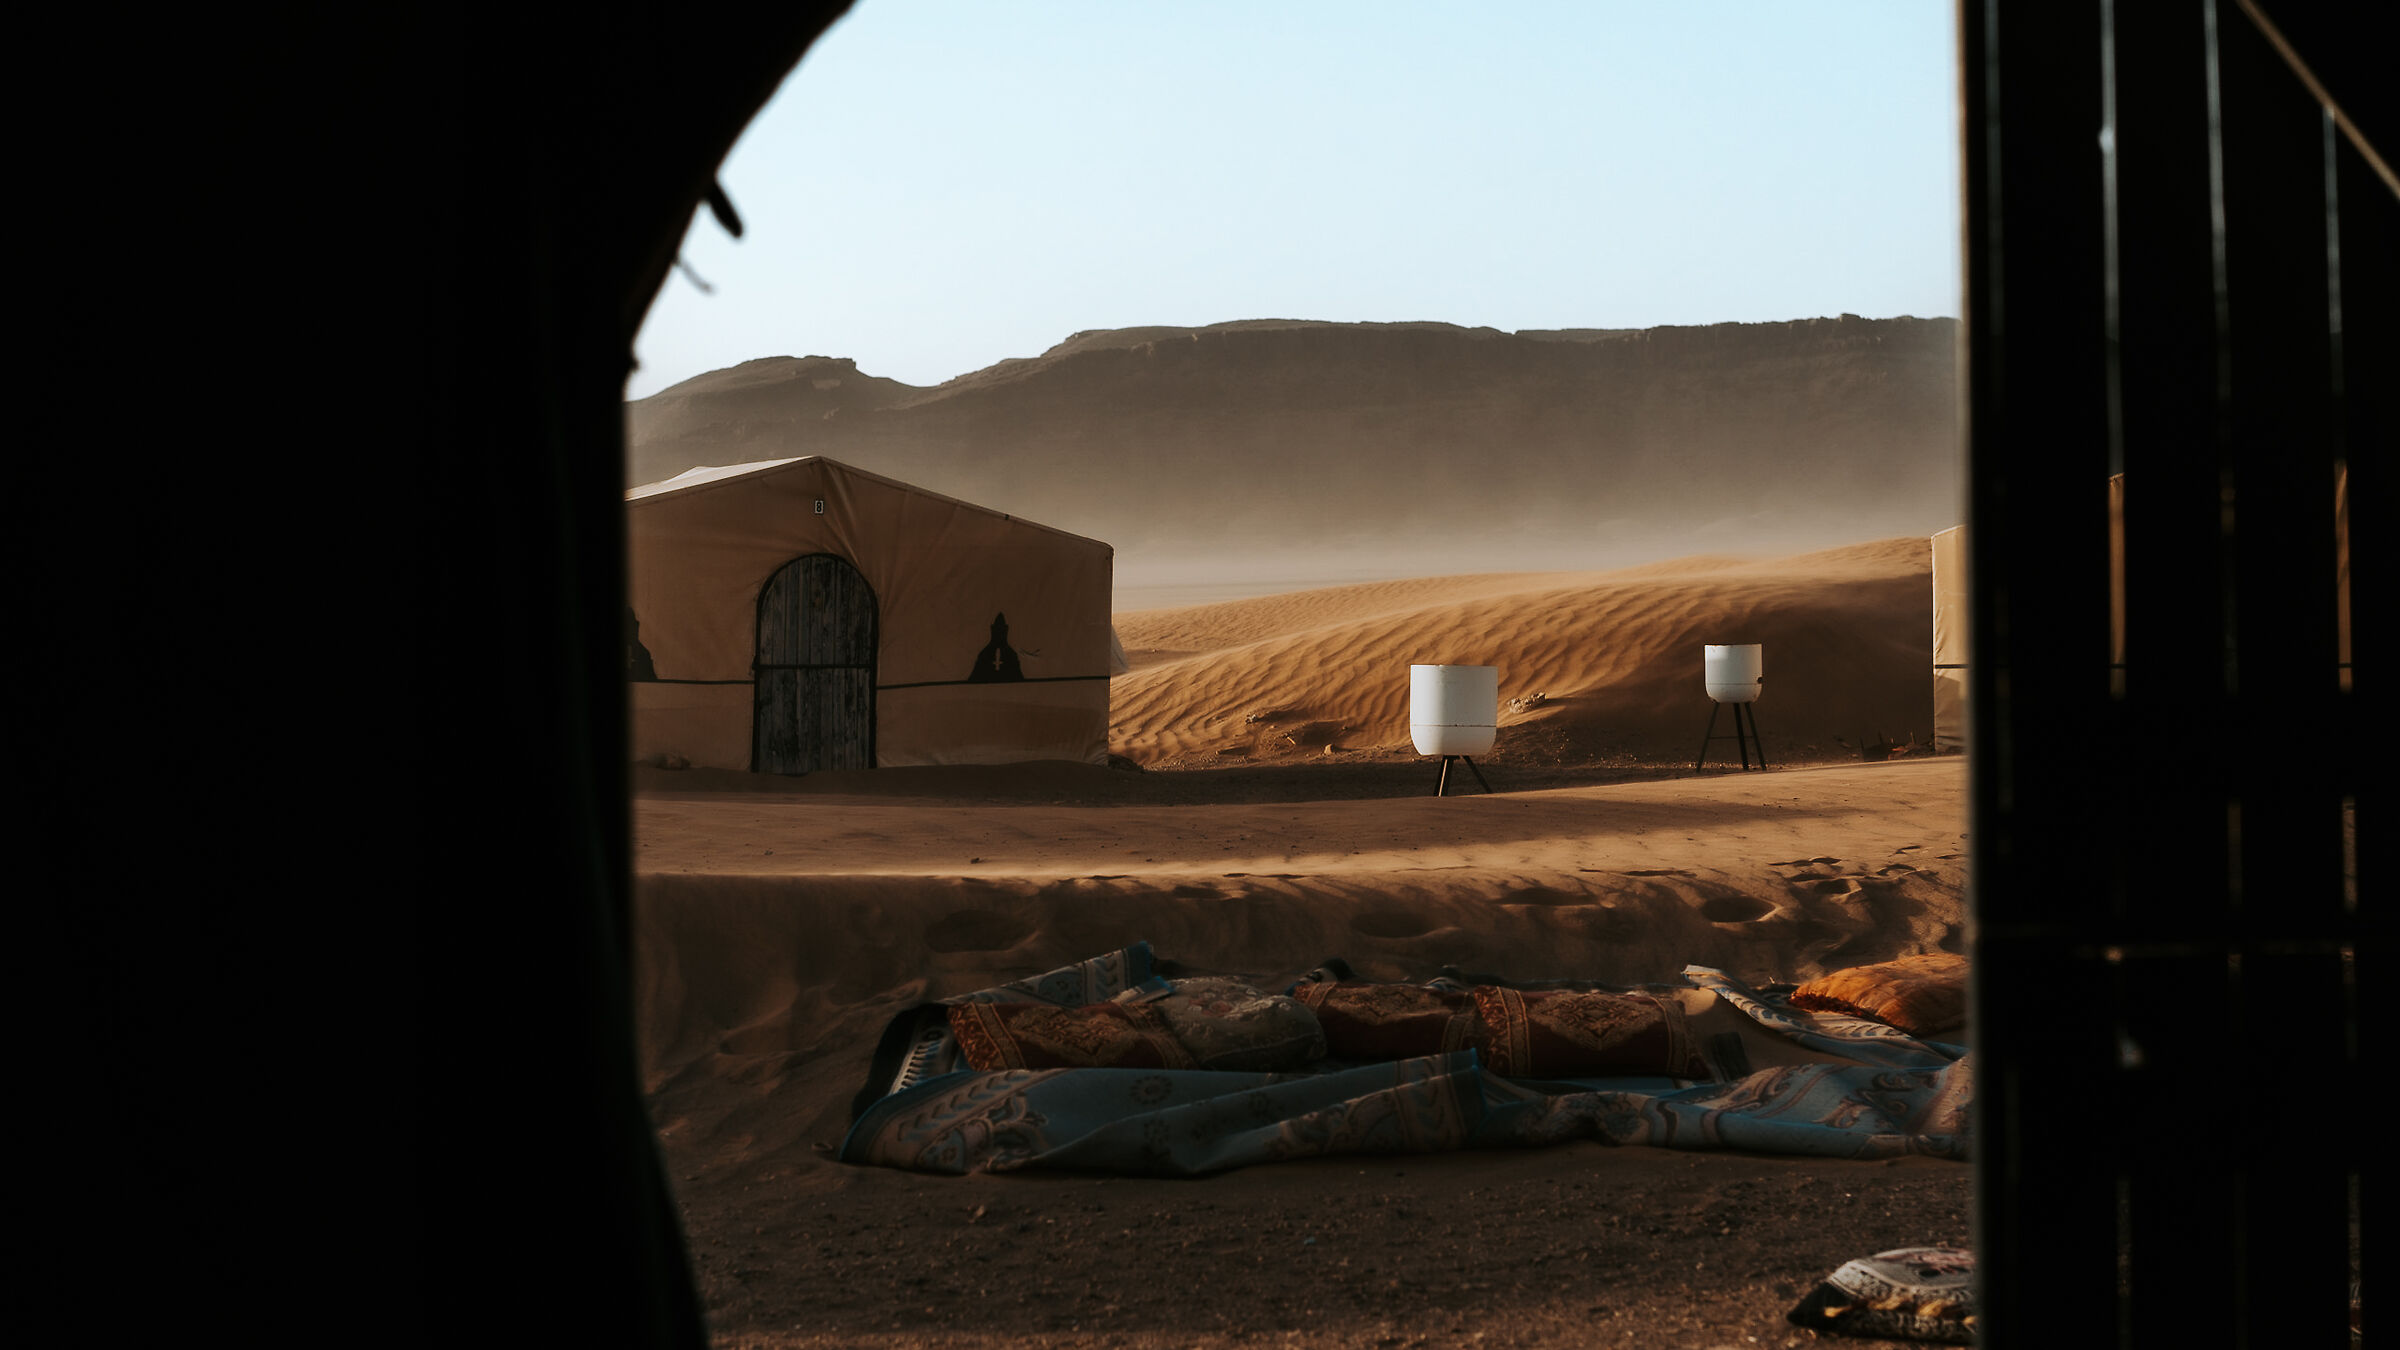 The awakening of the Desert...